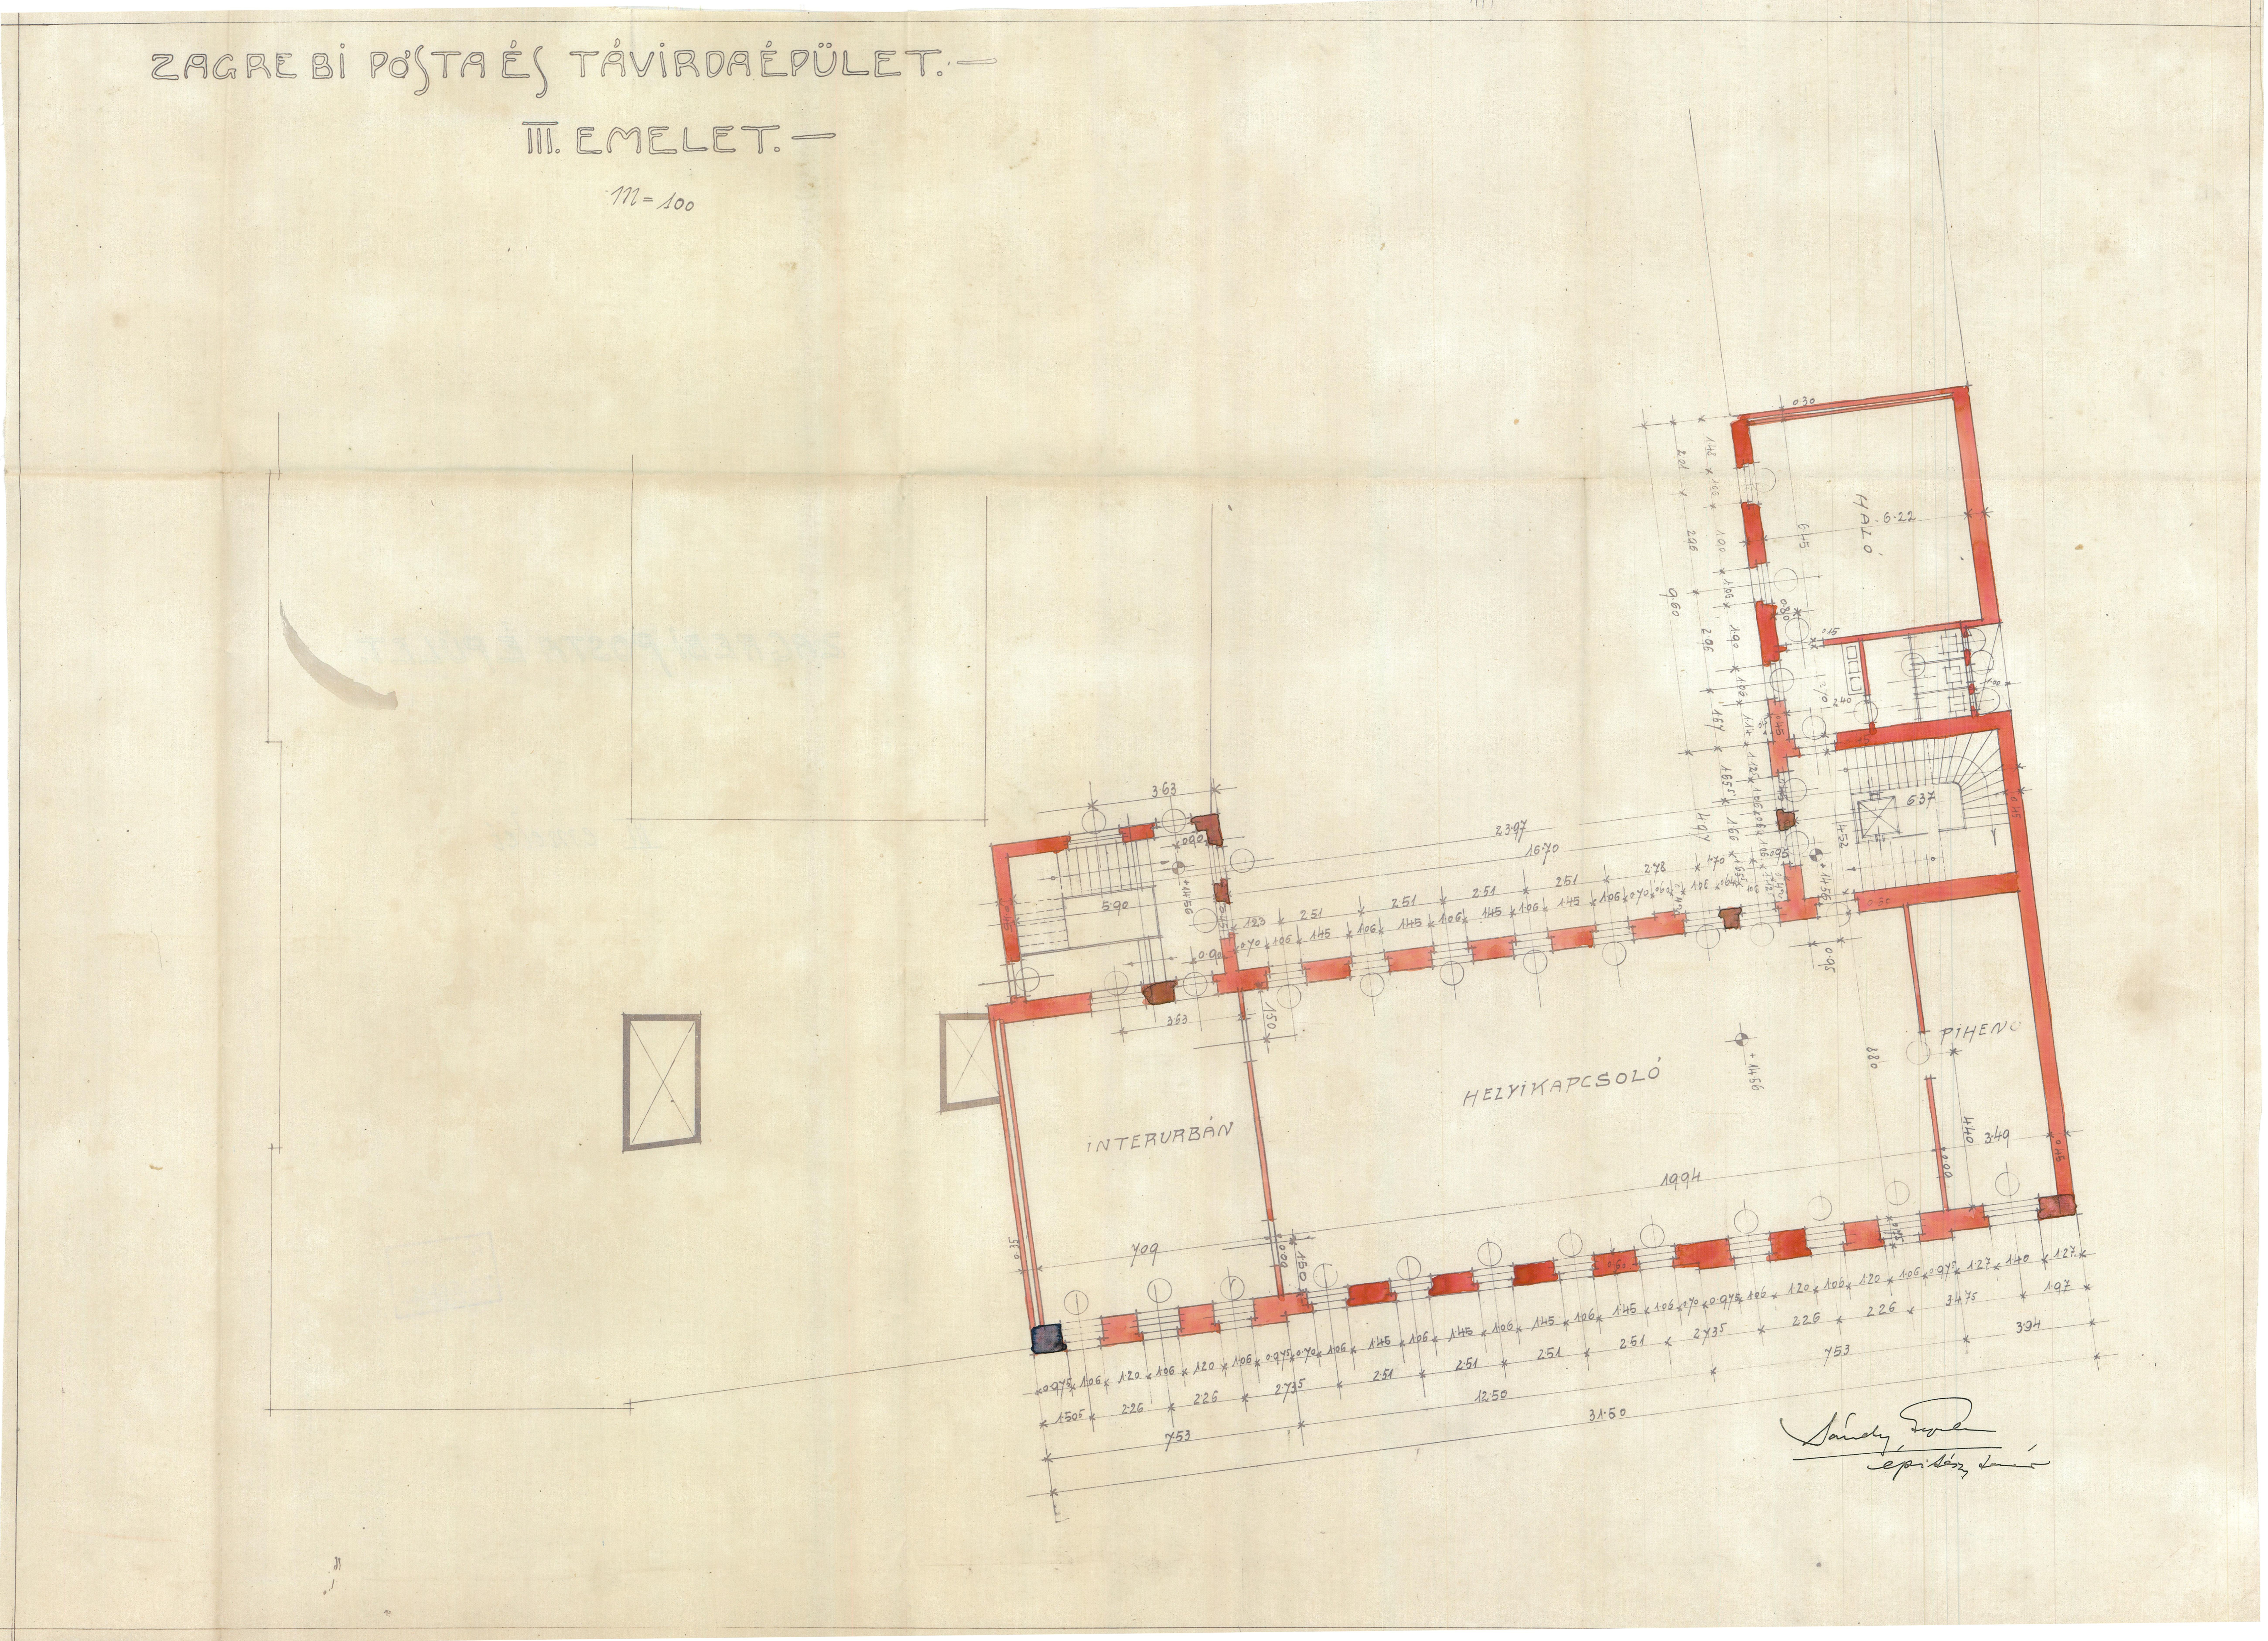 Műszaki rajz - Zágrábi posta- és és távírdaépület. III. emelet alaprajz (részlet) (Postamúzeum CC BY-NC-SA)